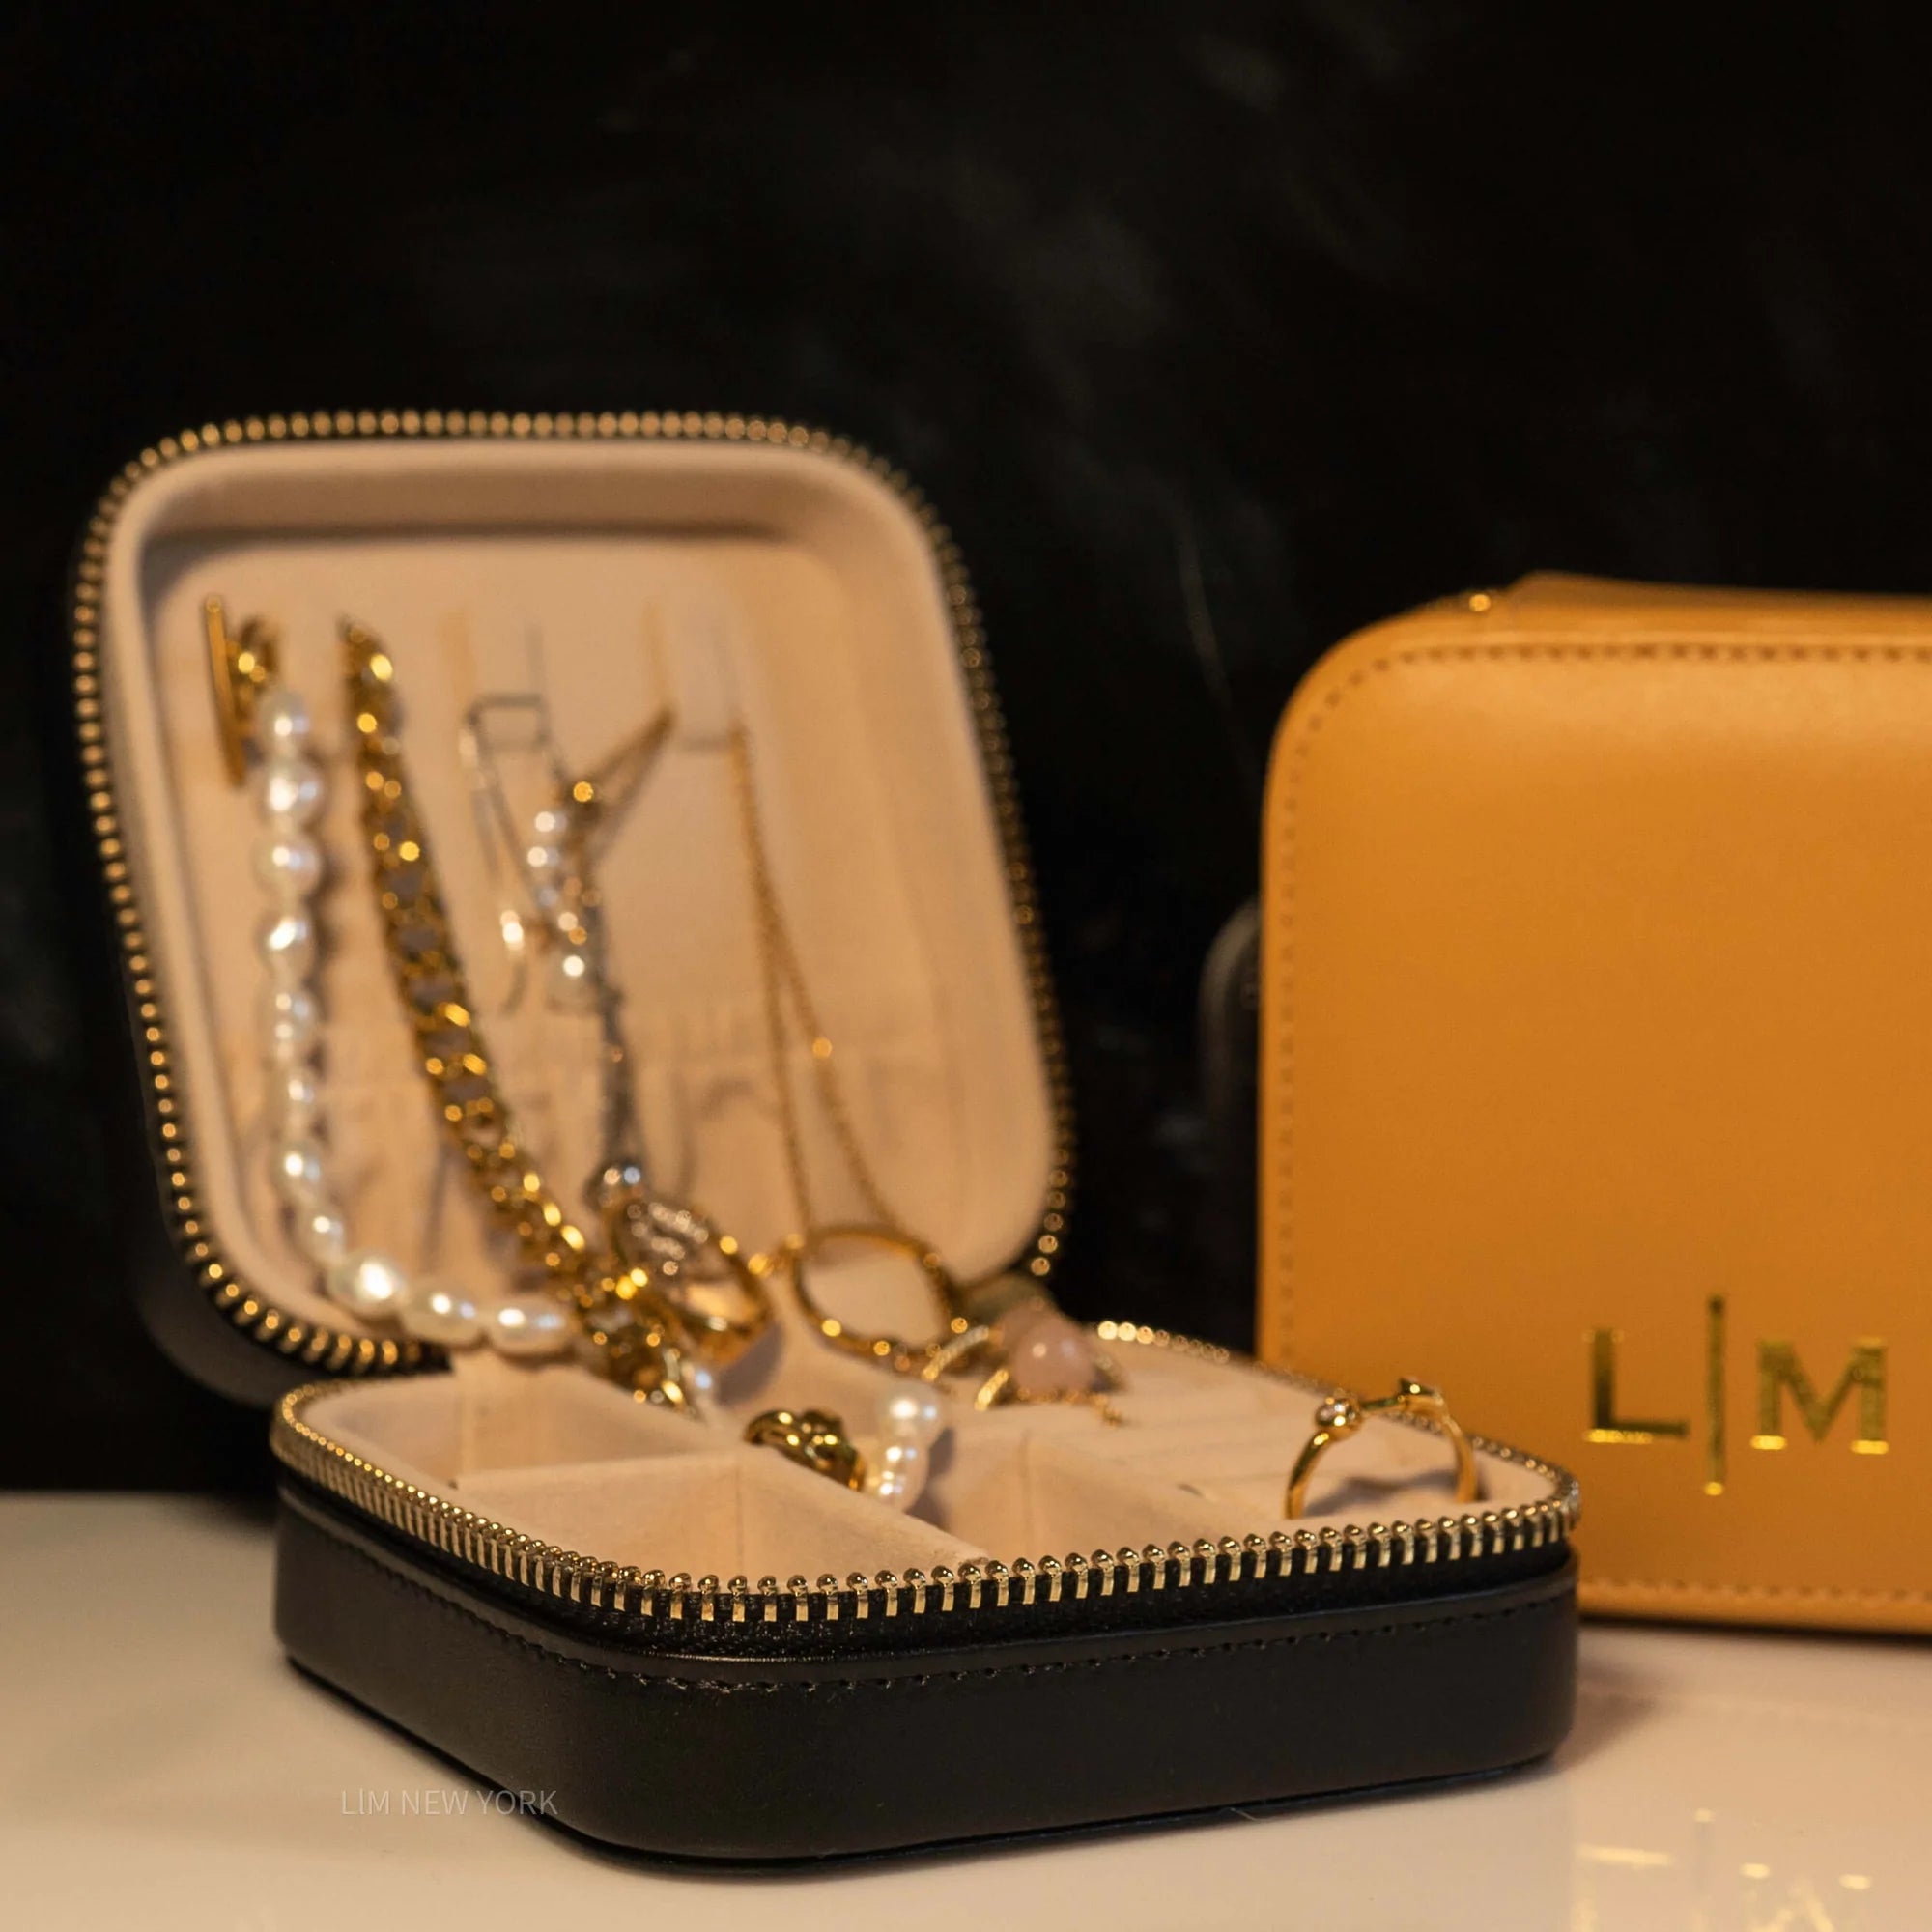 Designer Jewellery Boxes, Luxury Trinket Boxes